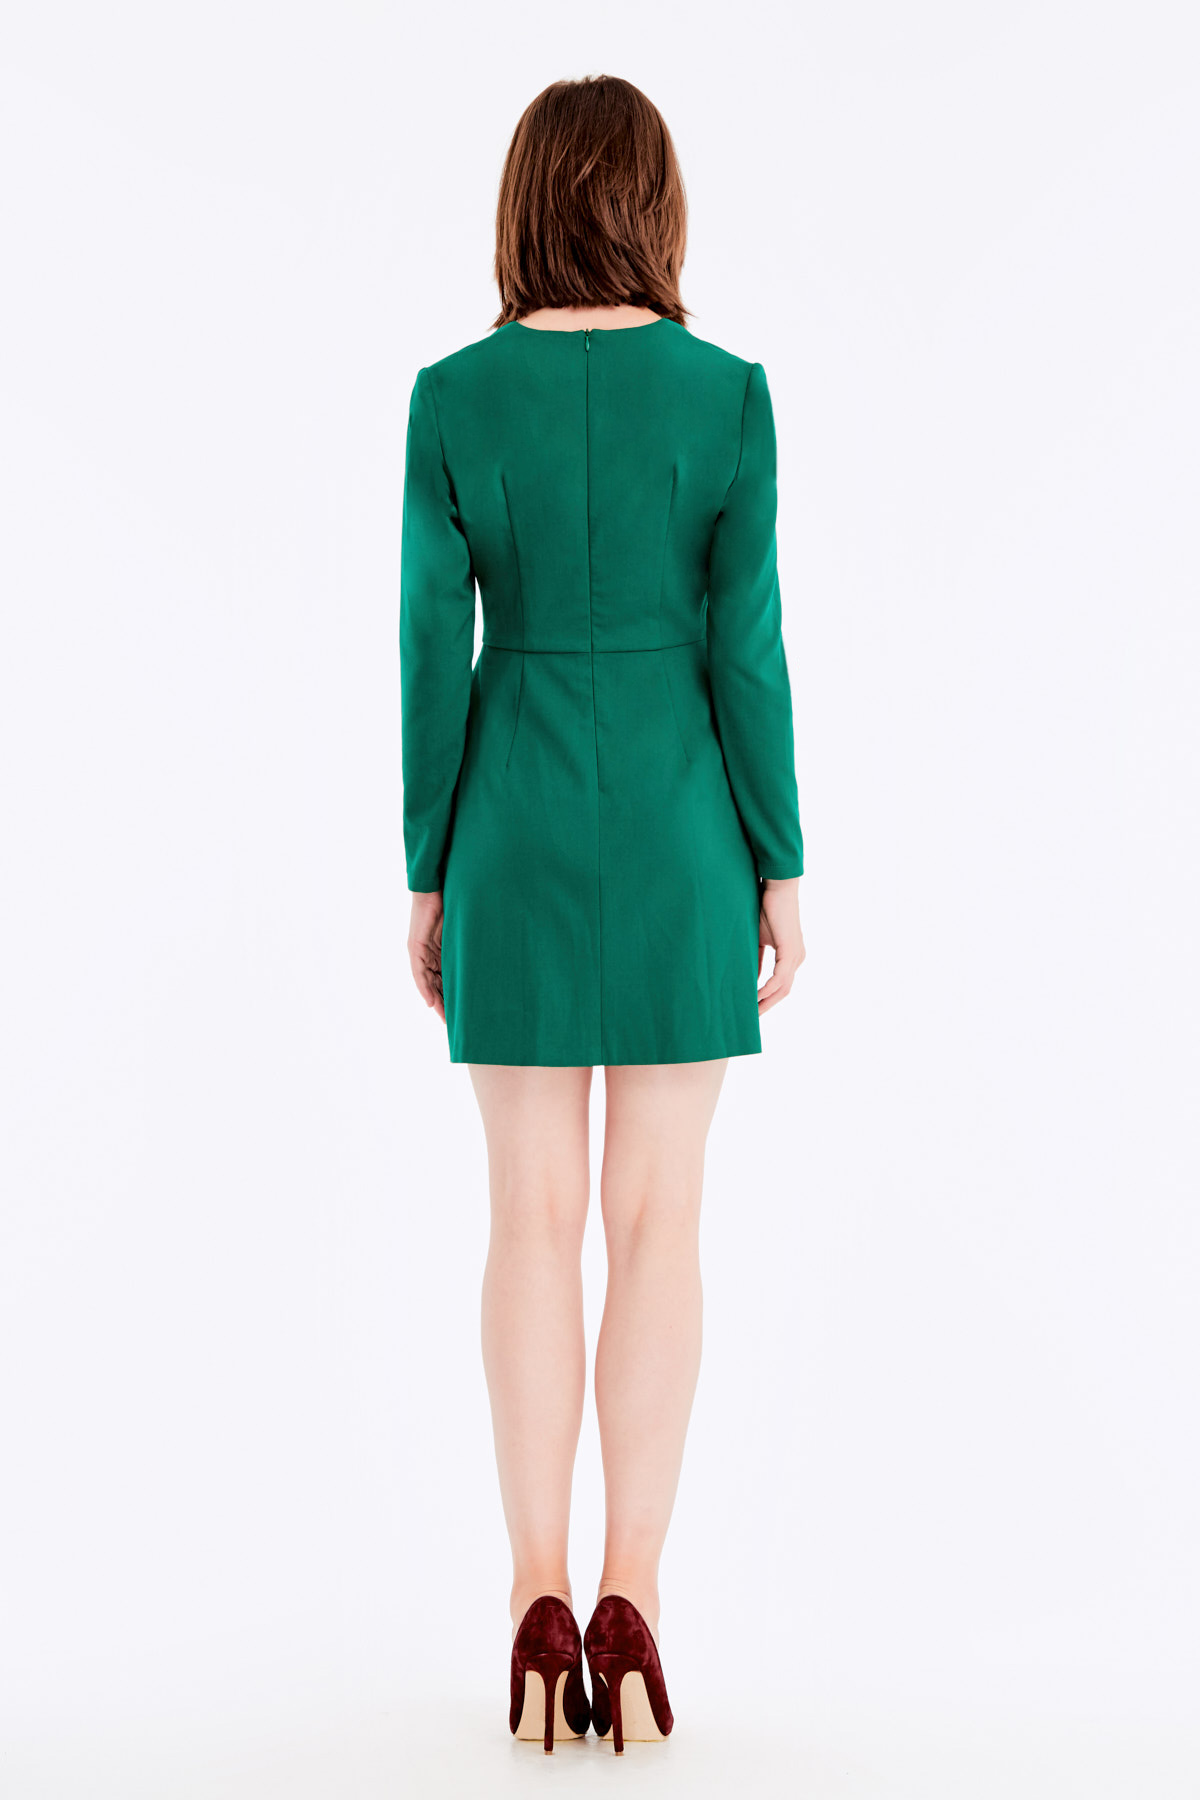 Зелена сукня з V-подібним вирізом, спідниця на зап, фото 14